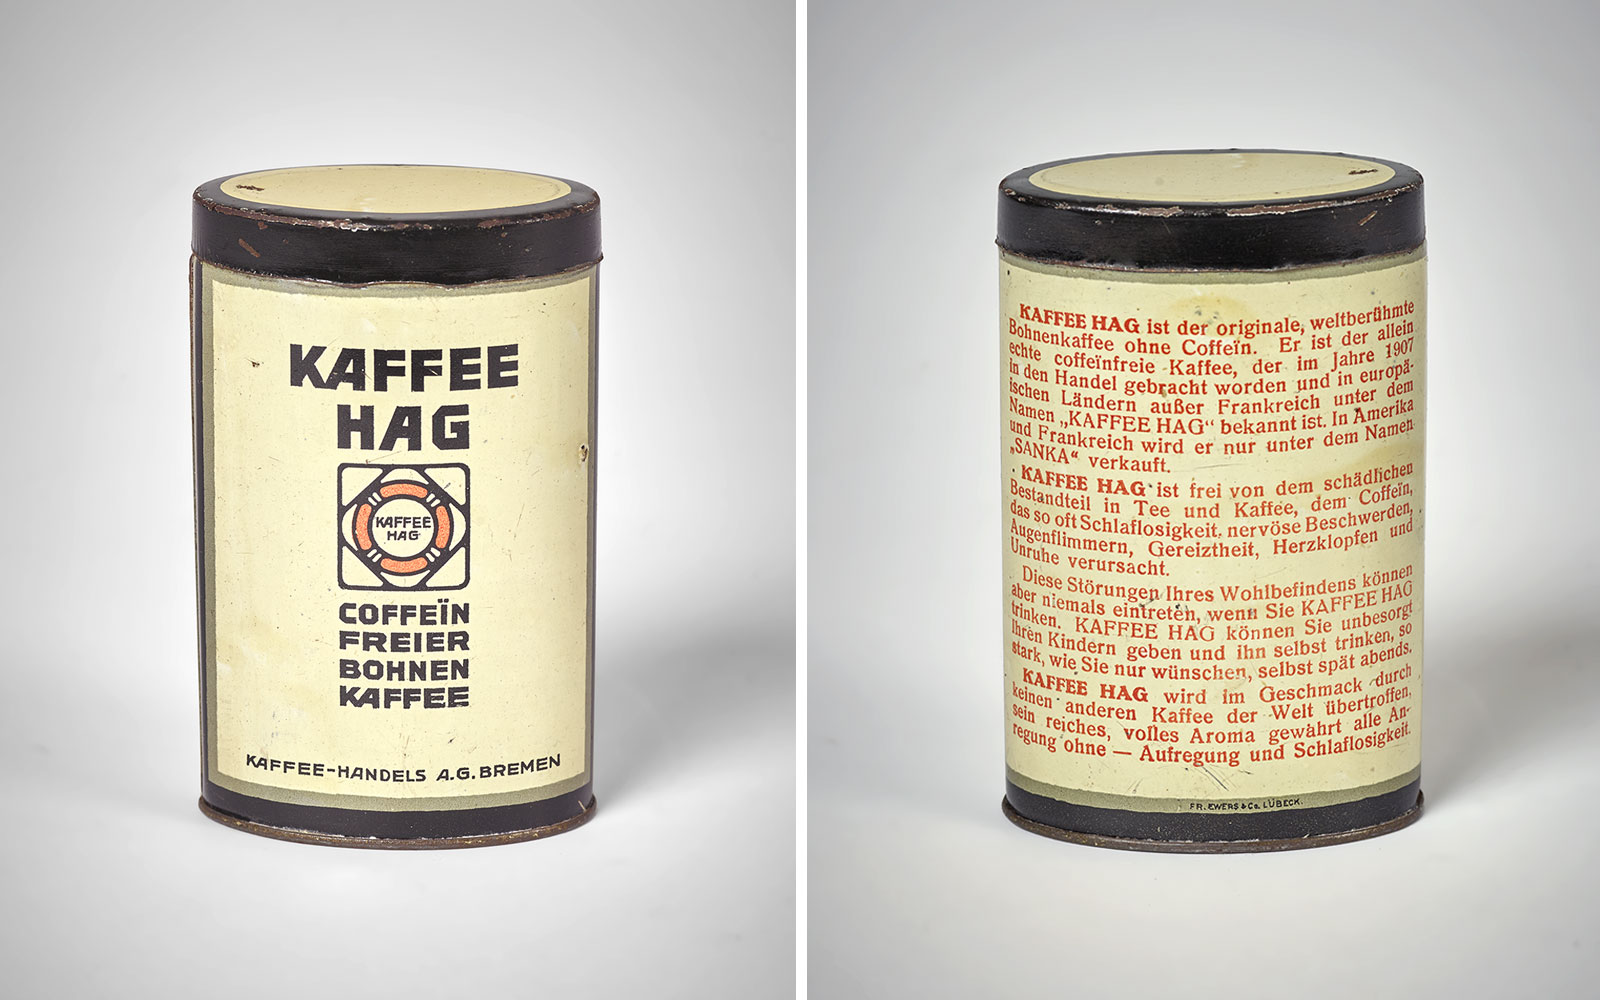 Kaffee Hag coffee tin